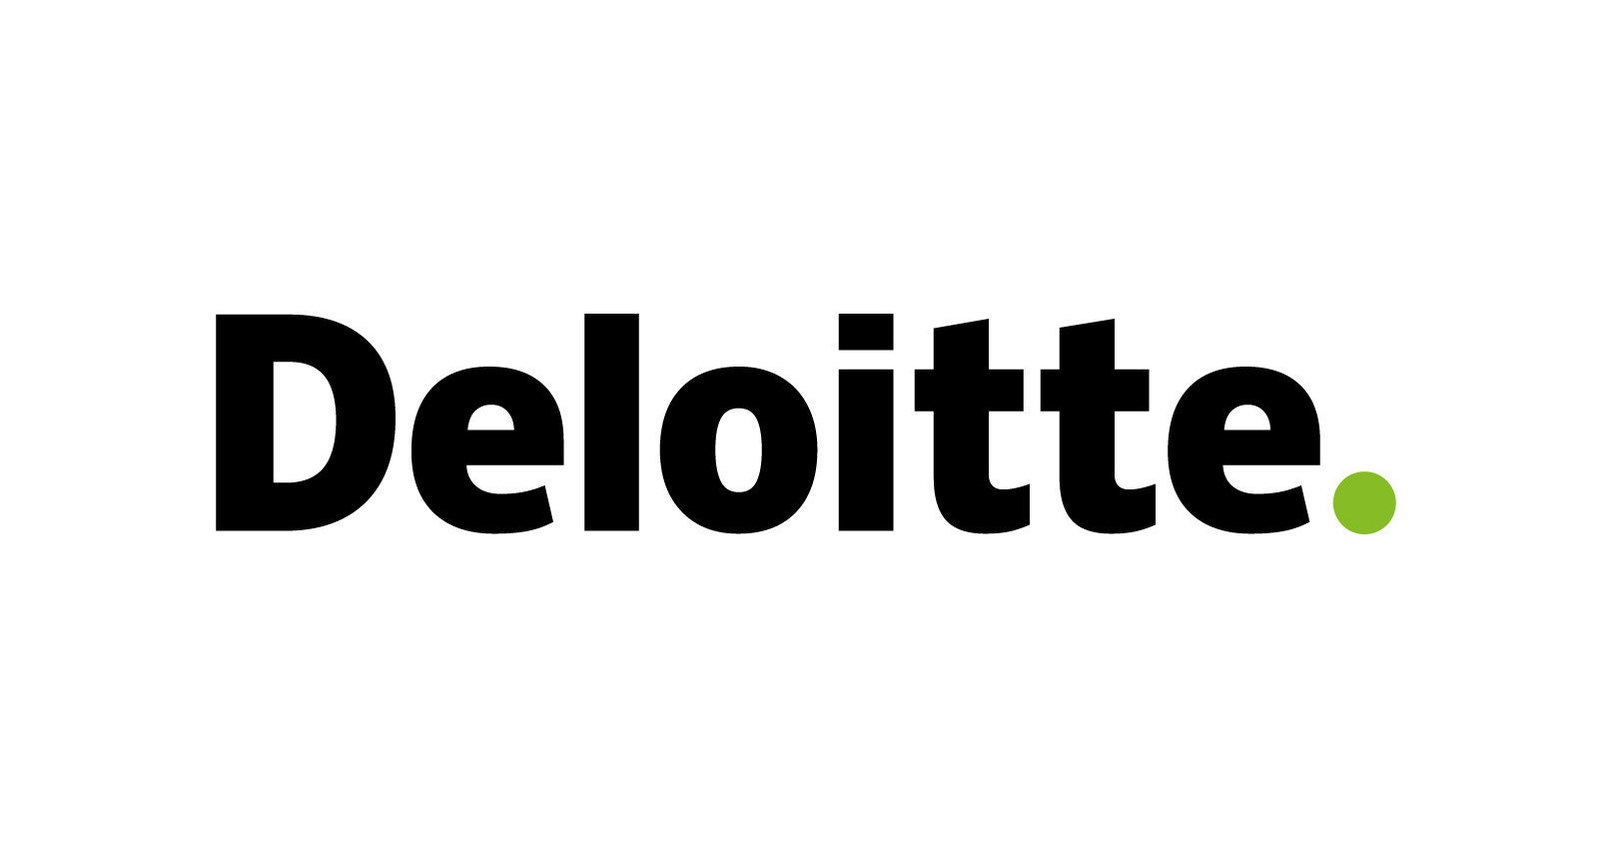 Deloitte's